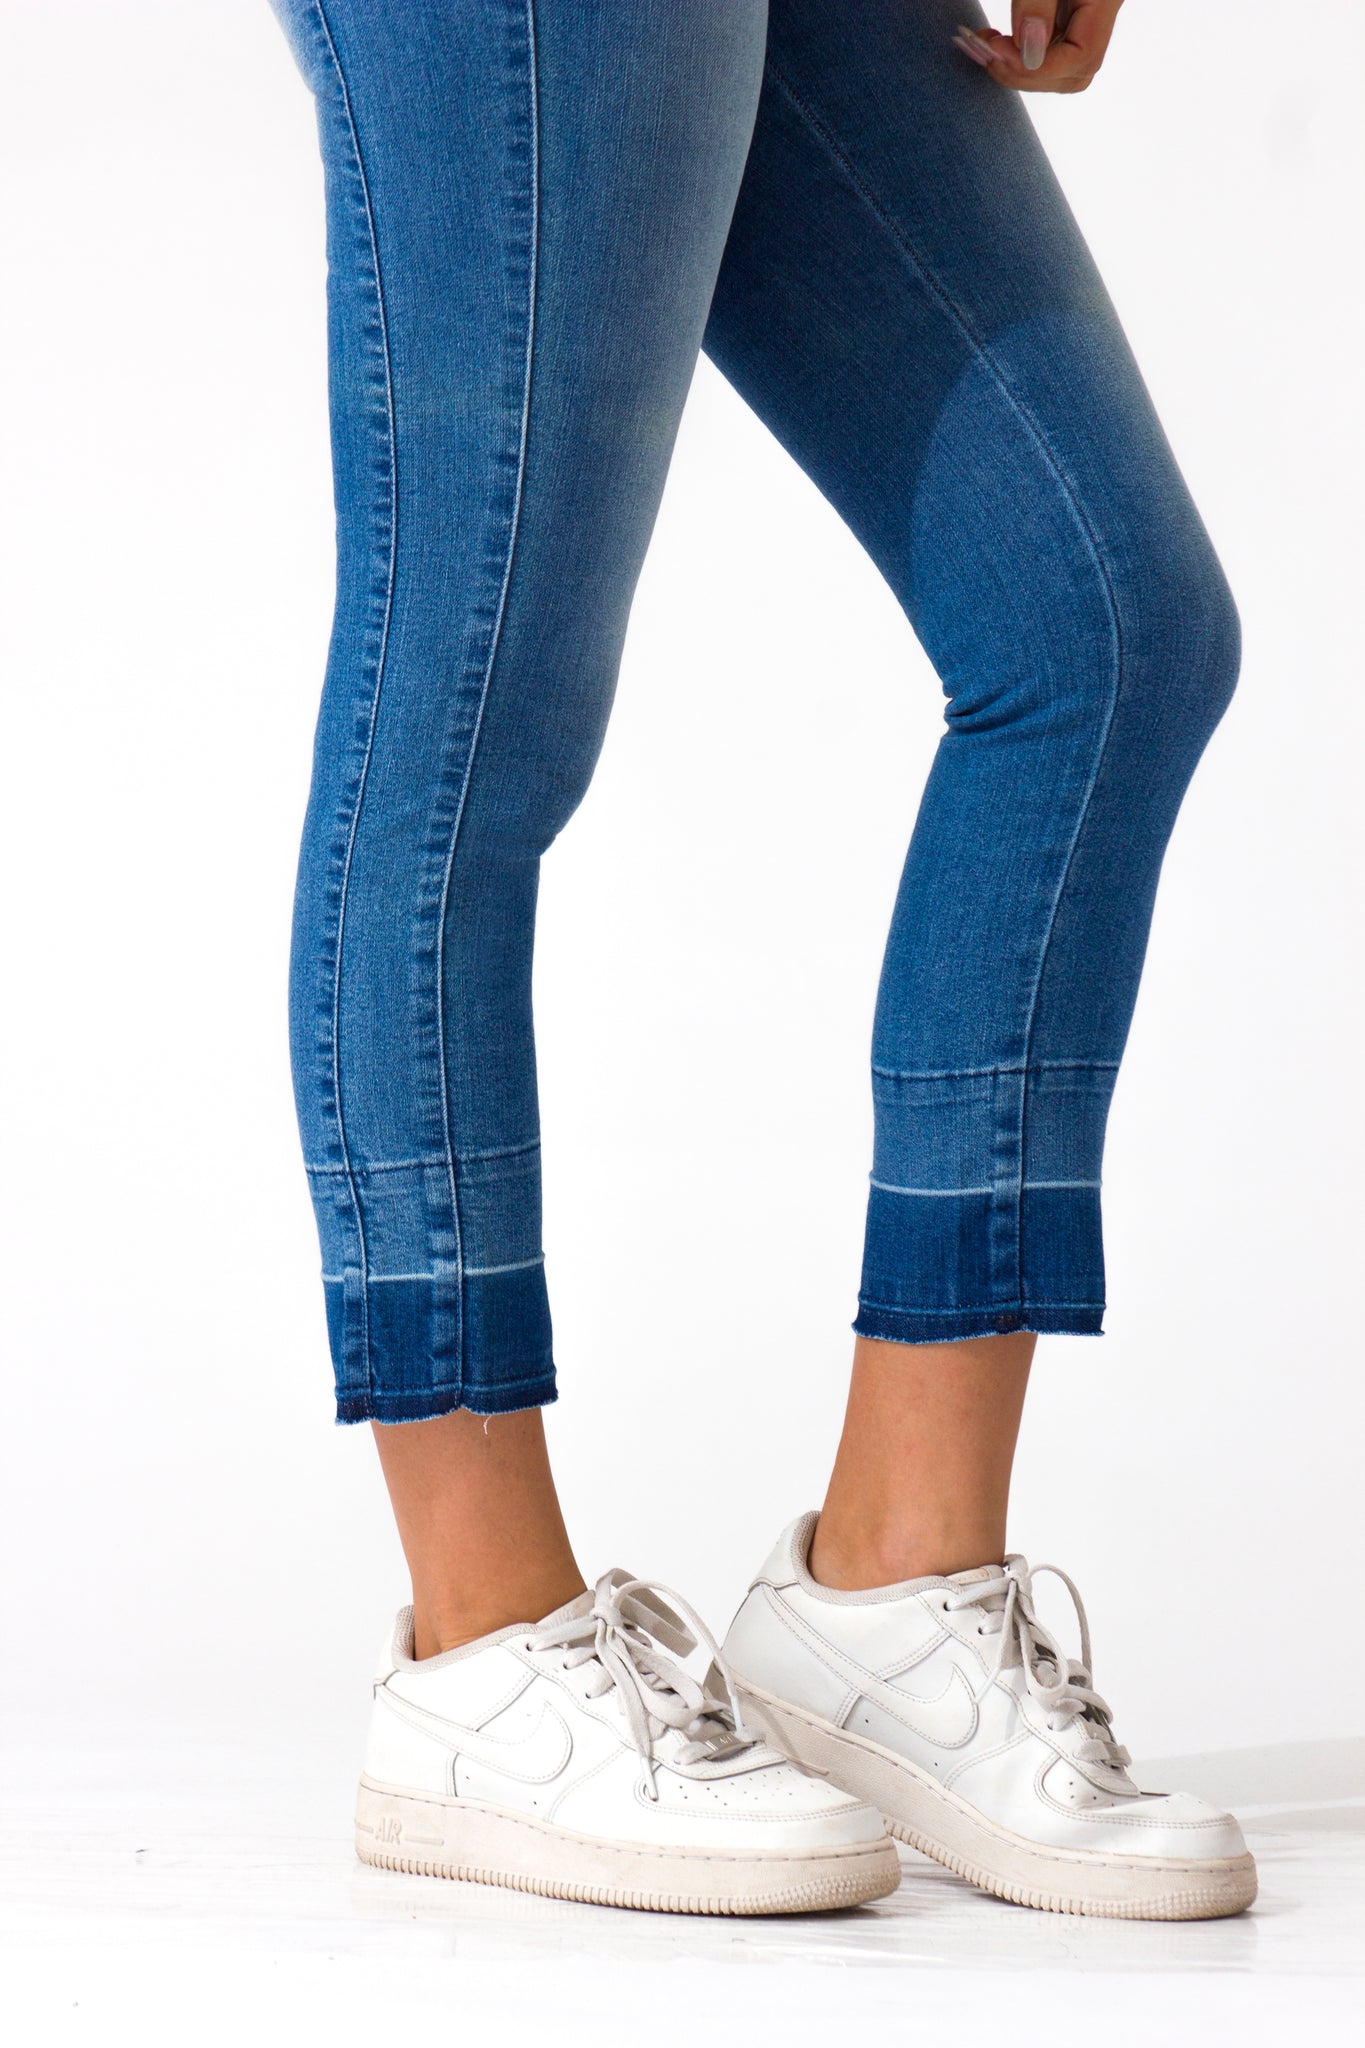 OHPOMP!® Cintura Media Skinny Ankle Jeans Azul Medio D845